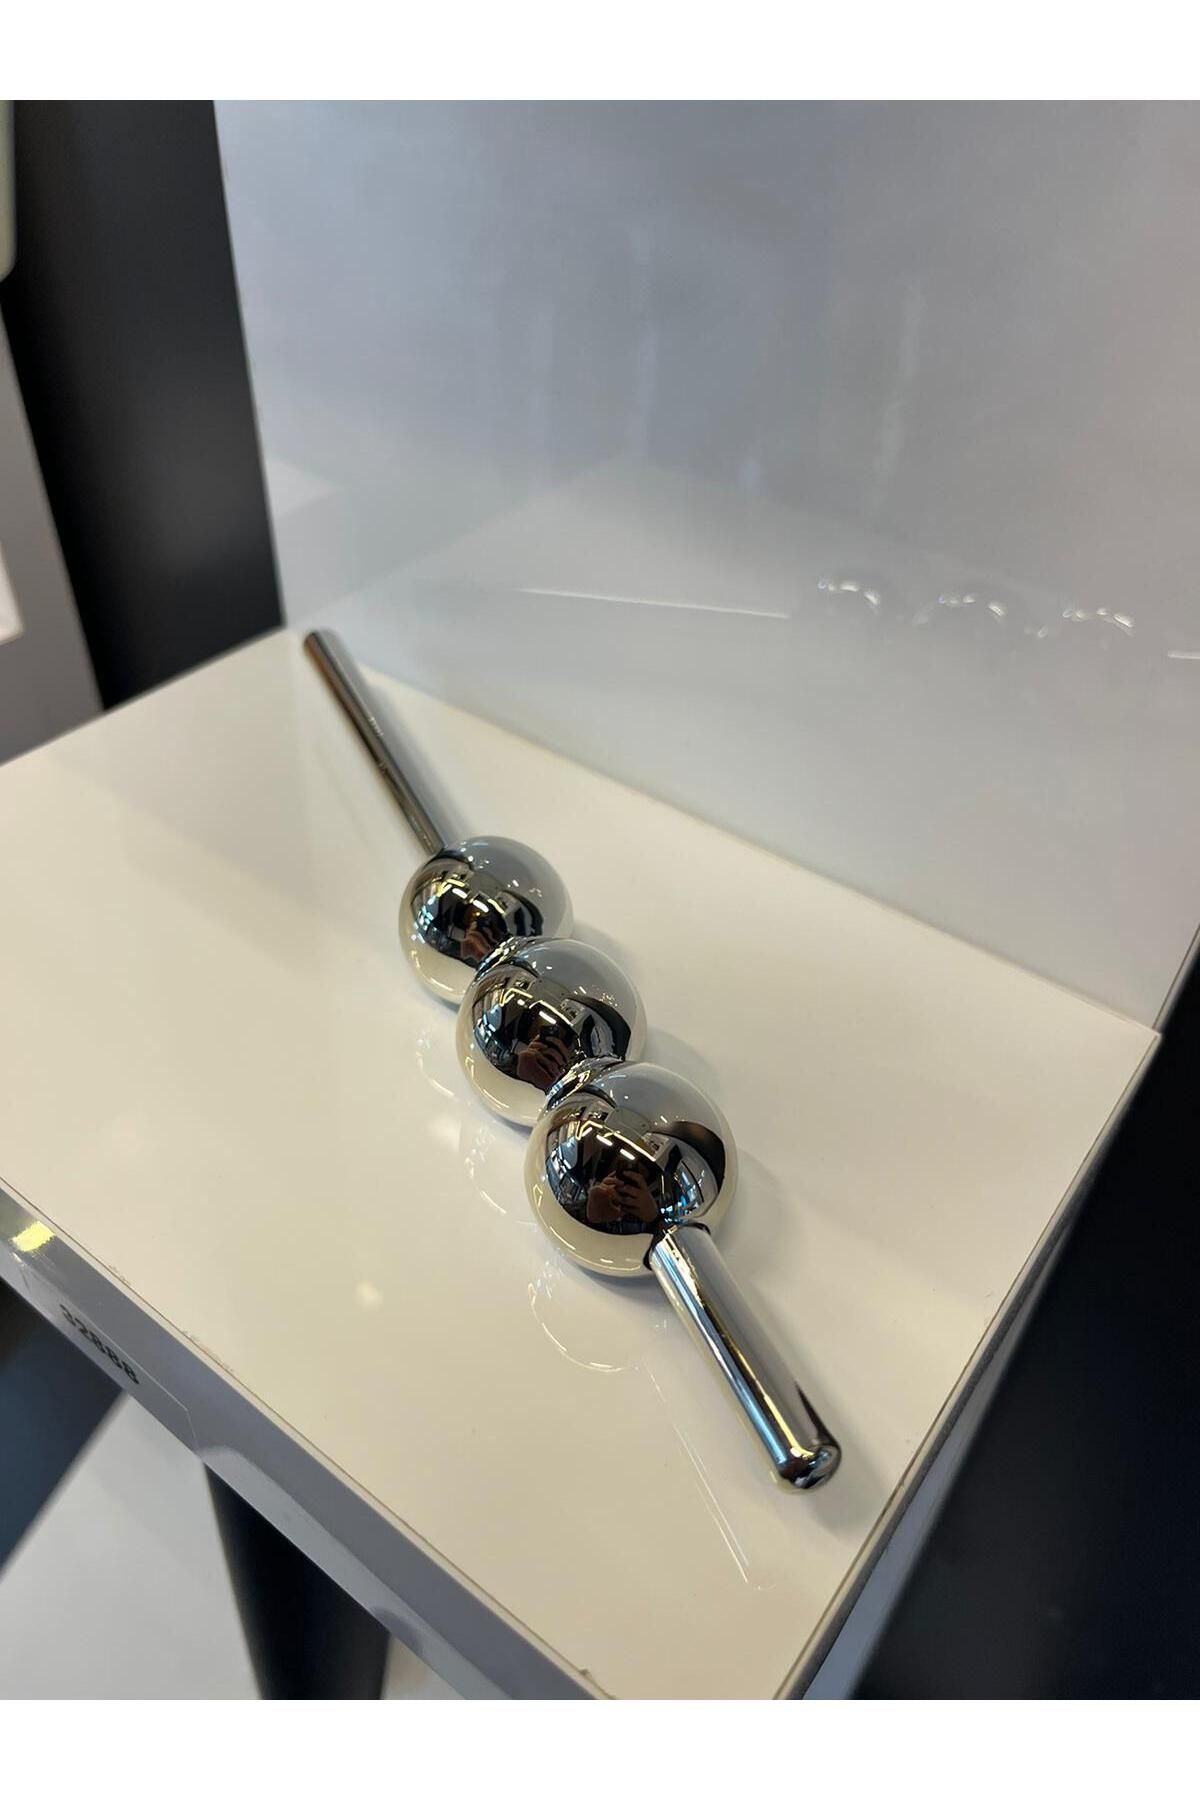 Emaks Petra Düz Metal Kulp 32mm Krom Dolap Kapak Tv Ünite Modern Çekmece Mobilya Kulbu Gümüş